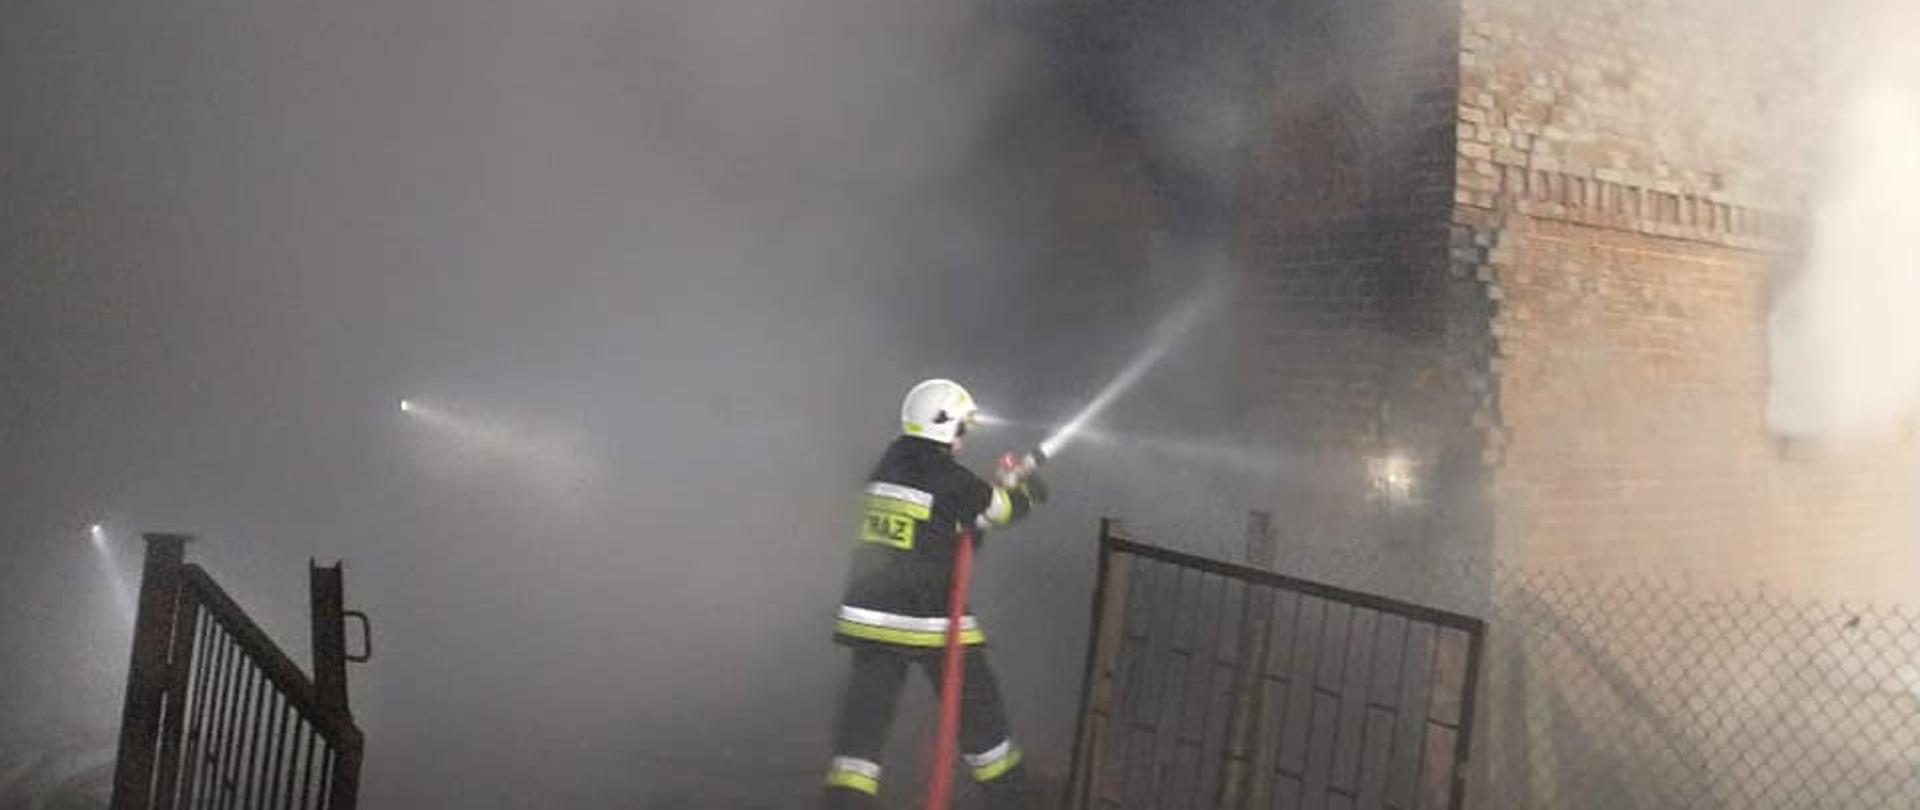 Zdjęcie przedstawia strażaka OSP prowadzącego działania gaśnicze na budynek inwentarski, z którego wydobywa się dym